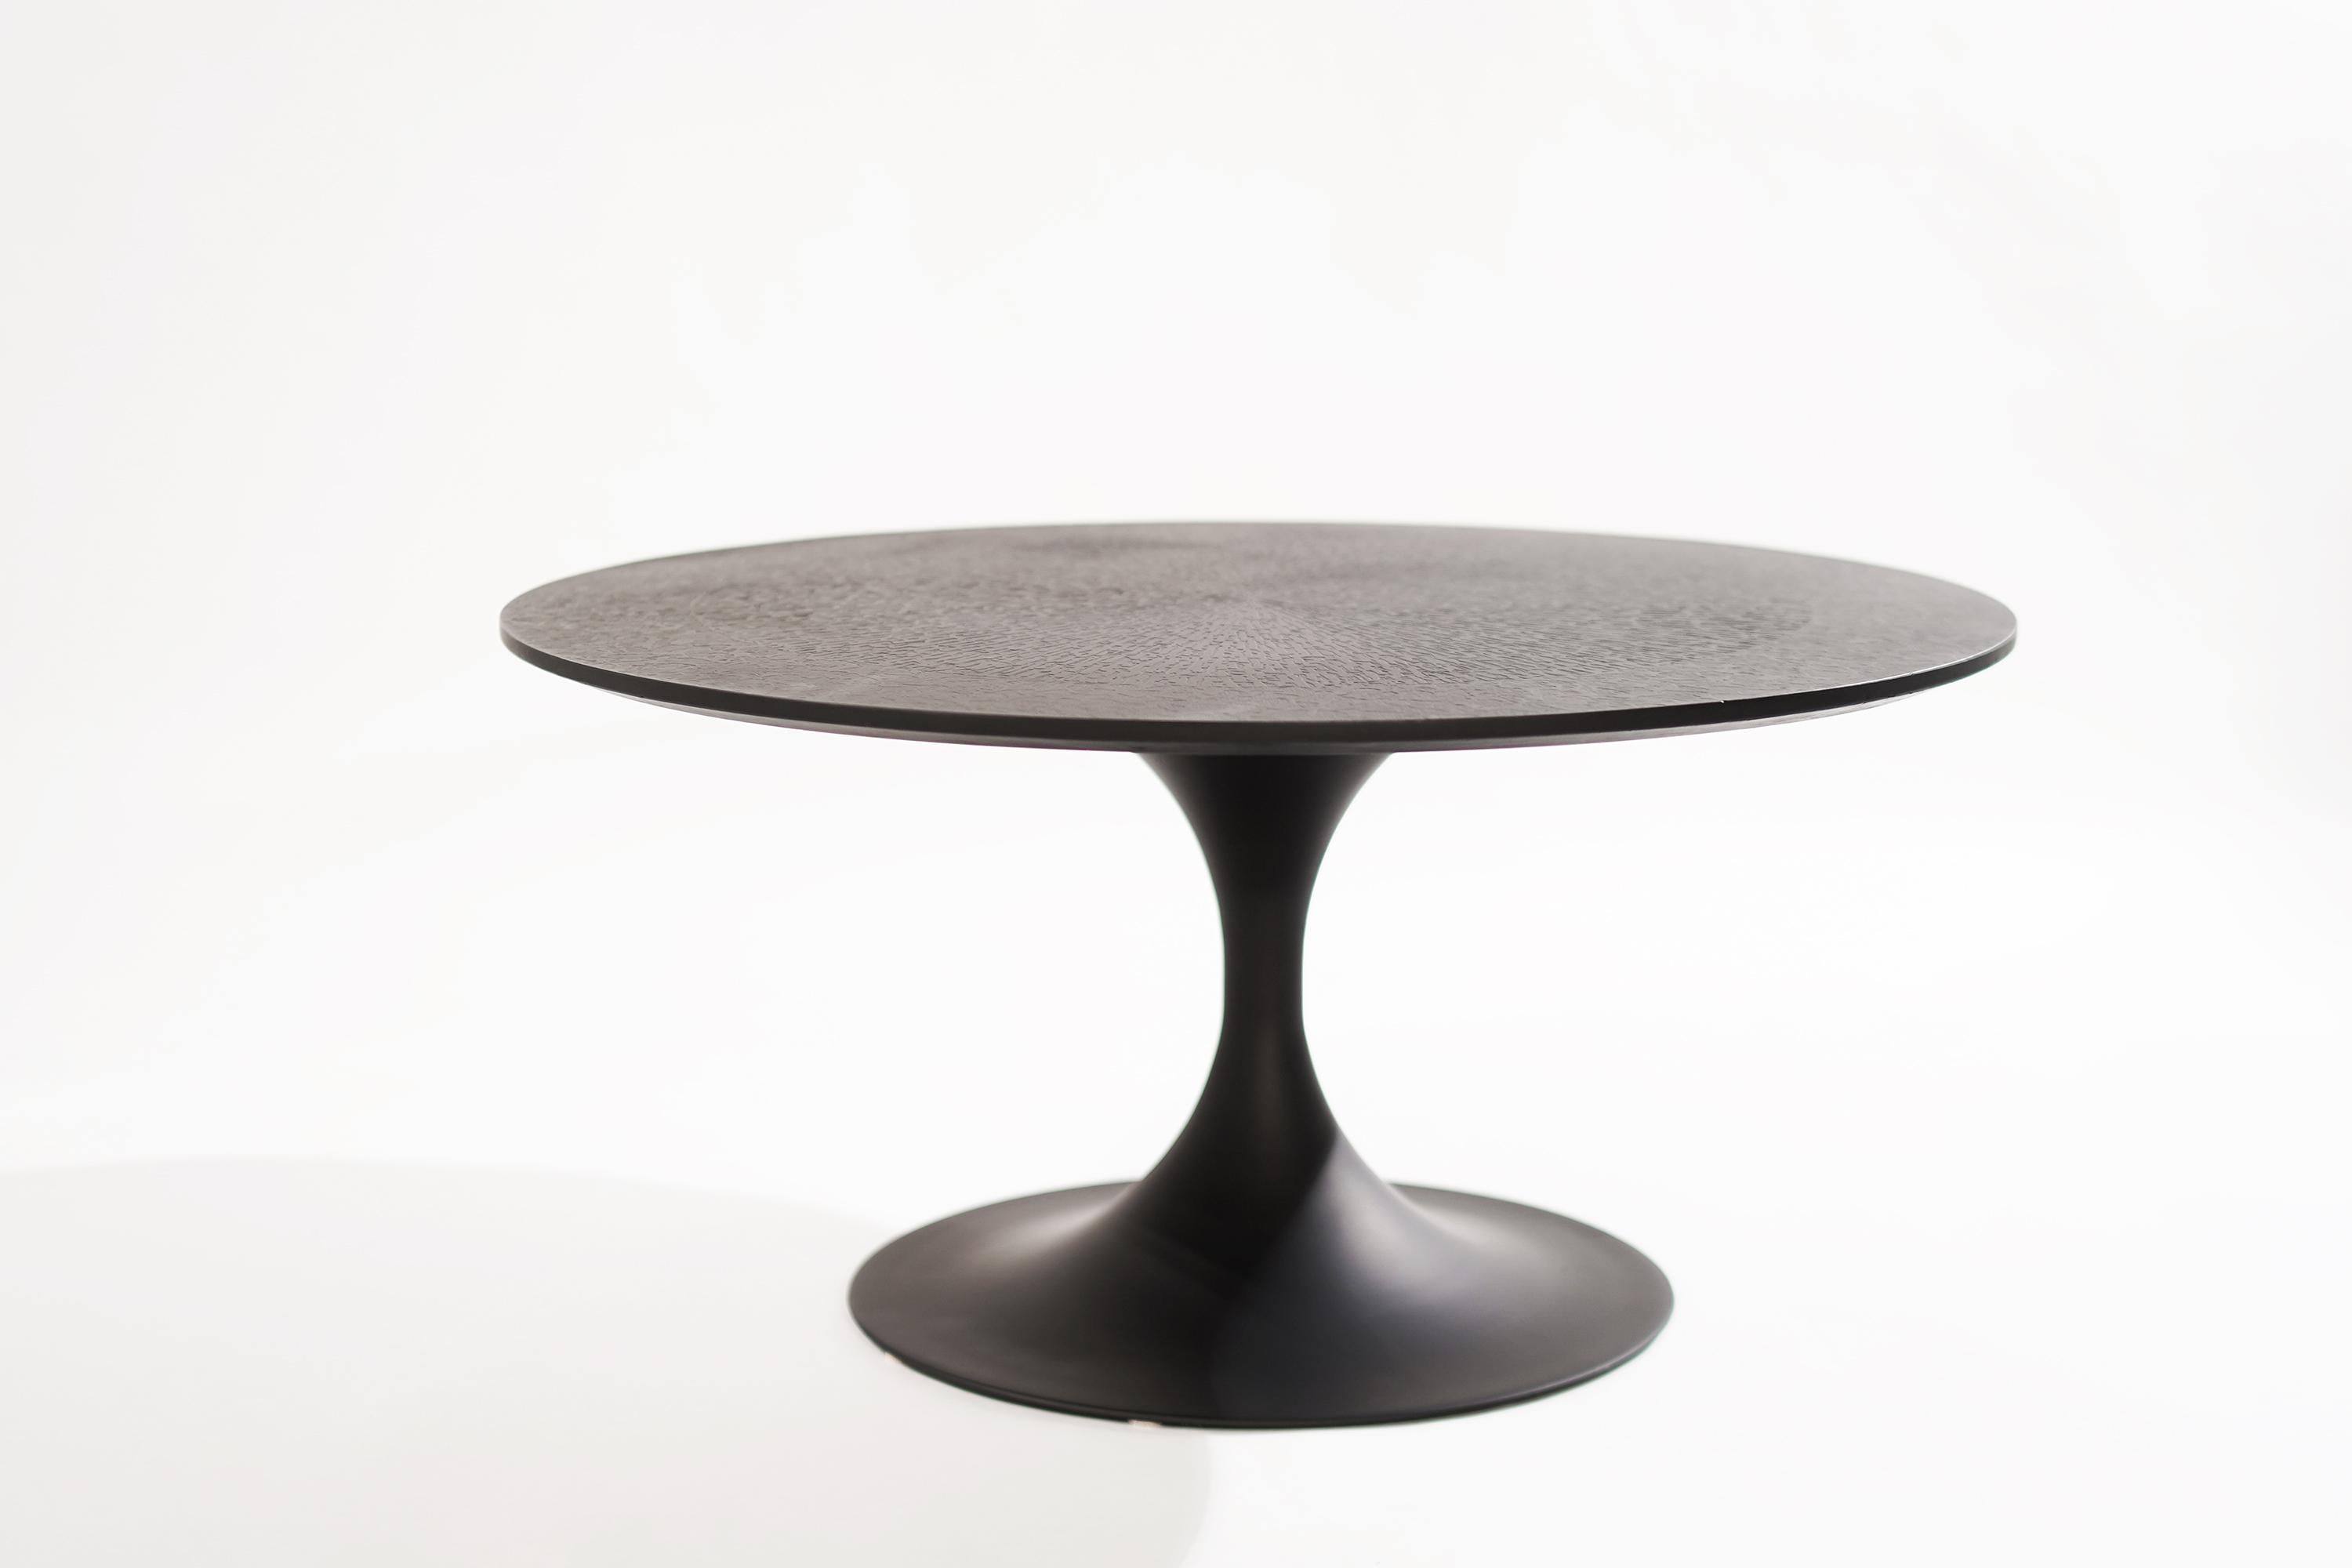 Table basse Tulip dans le style d'Eero Saarinen pour Knoll (non marqué), vers 1950-1959. 
Entièrement restauré, avec un dessus texturé inhabituel.

Parmi les autres designers de cette période figurent Milo Baughman, Vladimir Kagan, Hans Wegner,